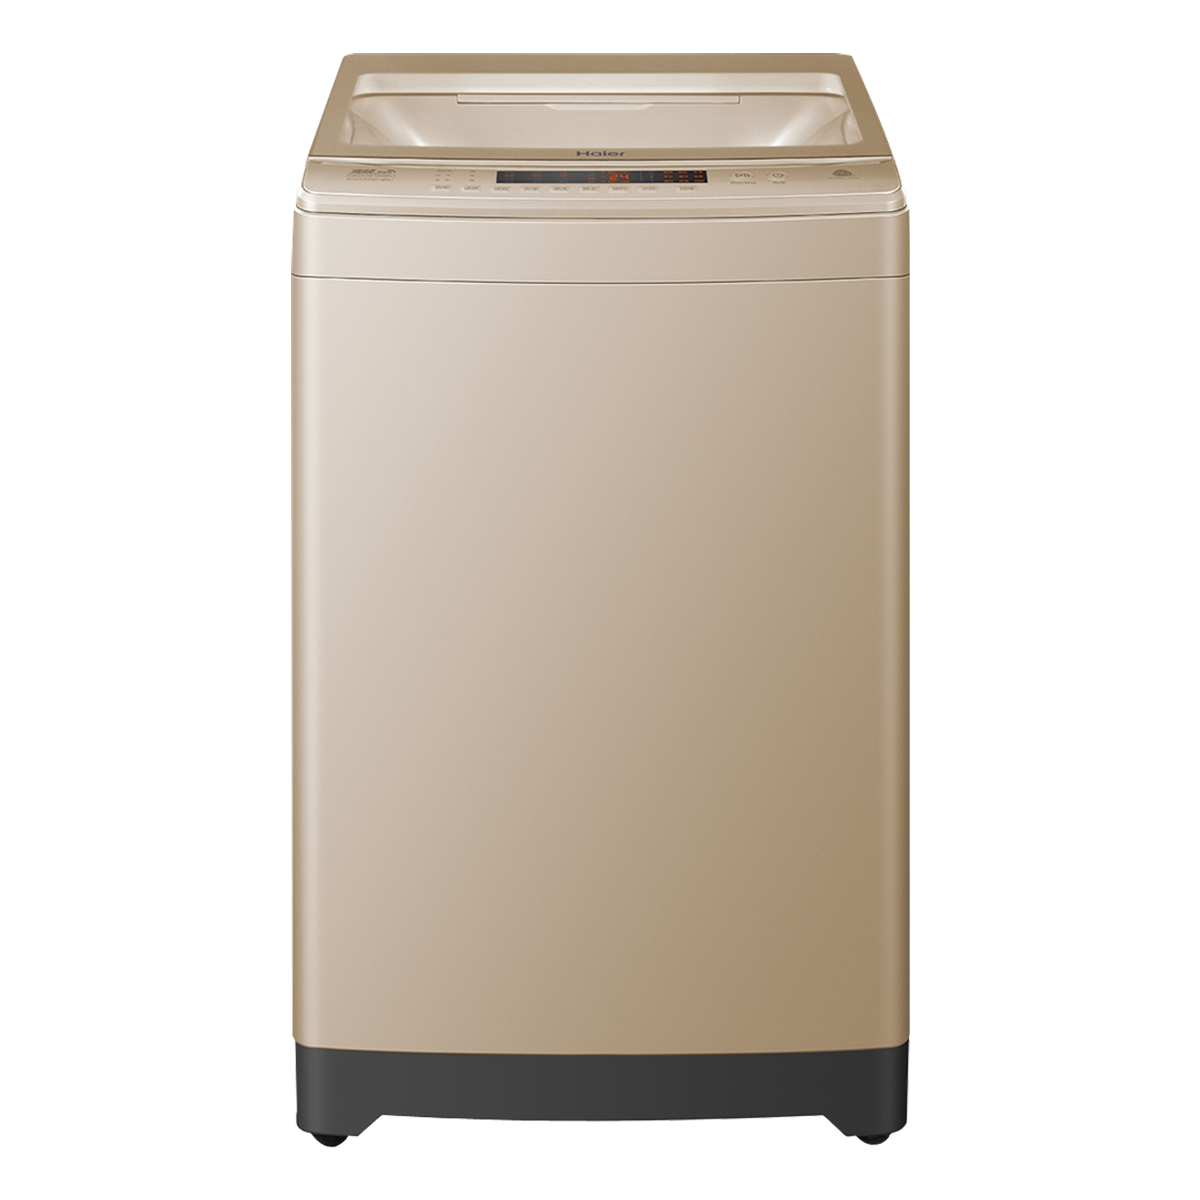 海尔Haier洗衣机 XQS85-BZ15288U1 说明书